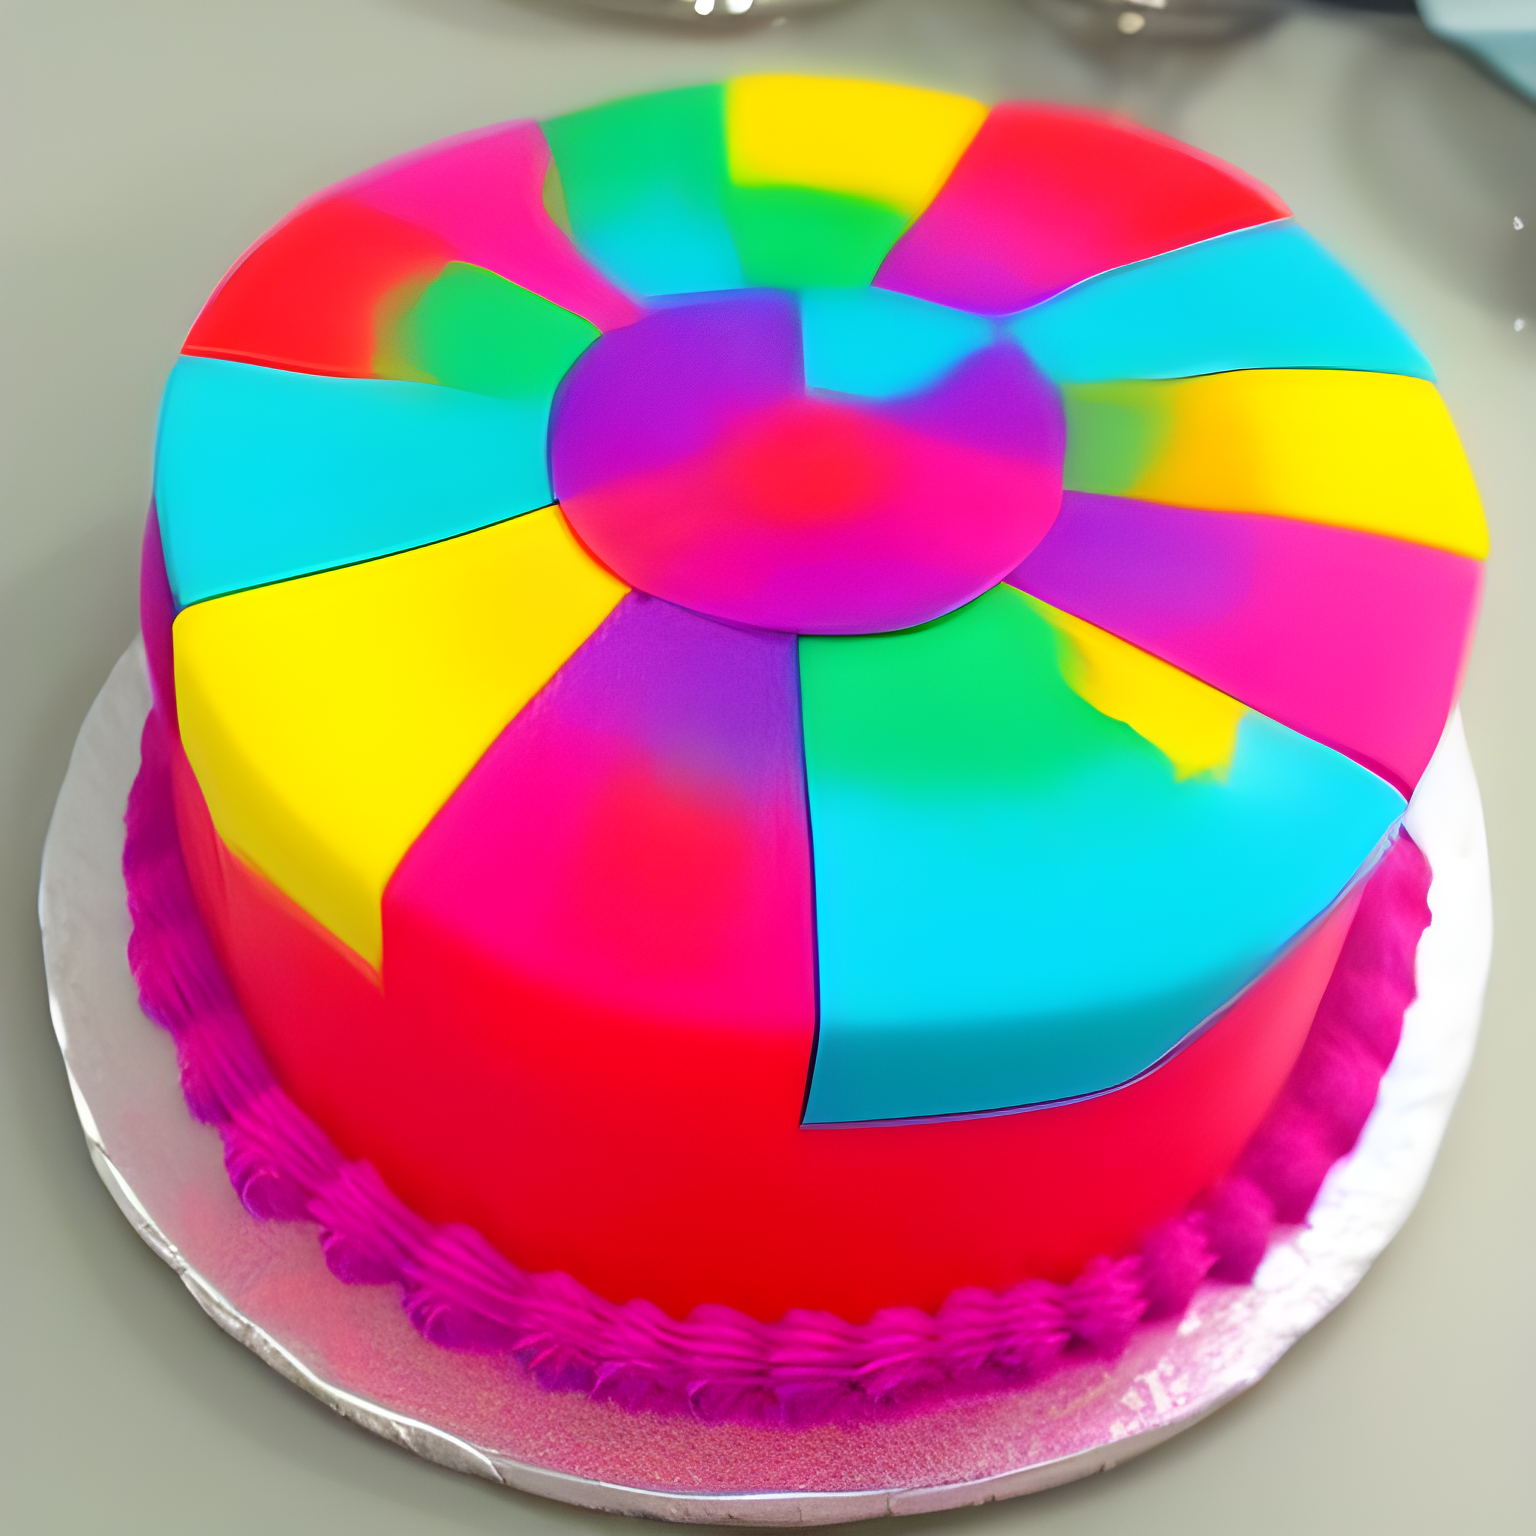 κεικ cake colorful